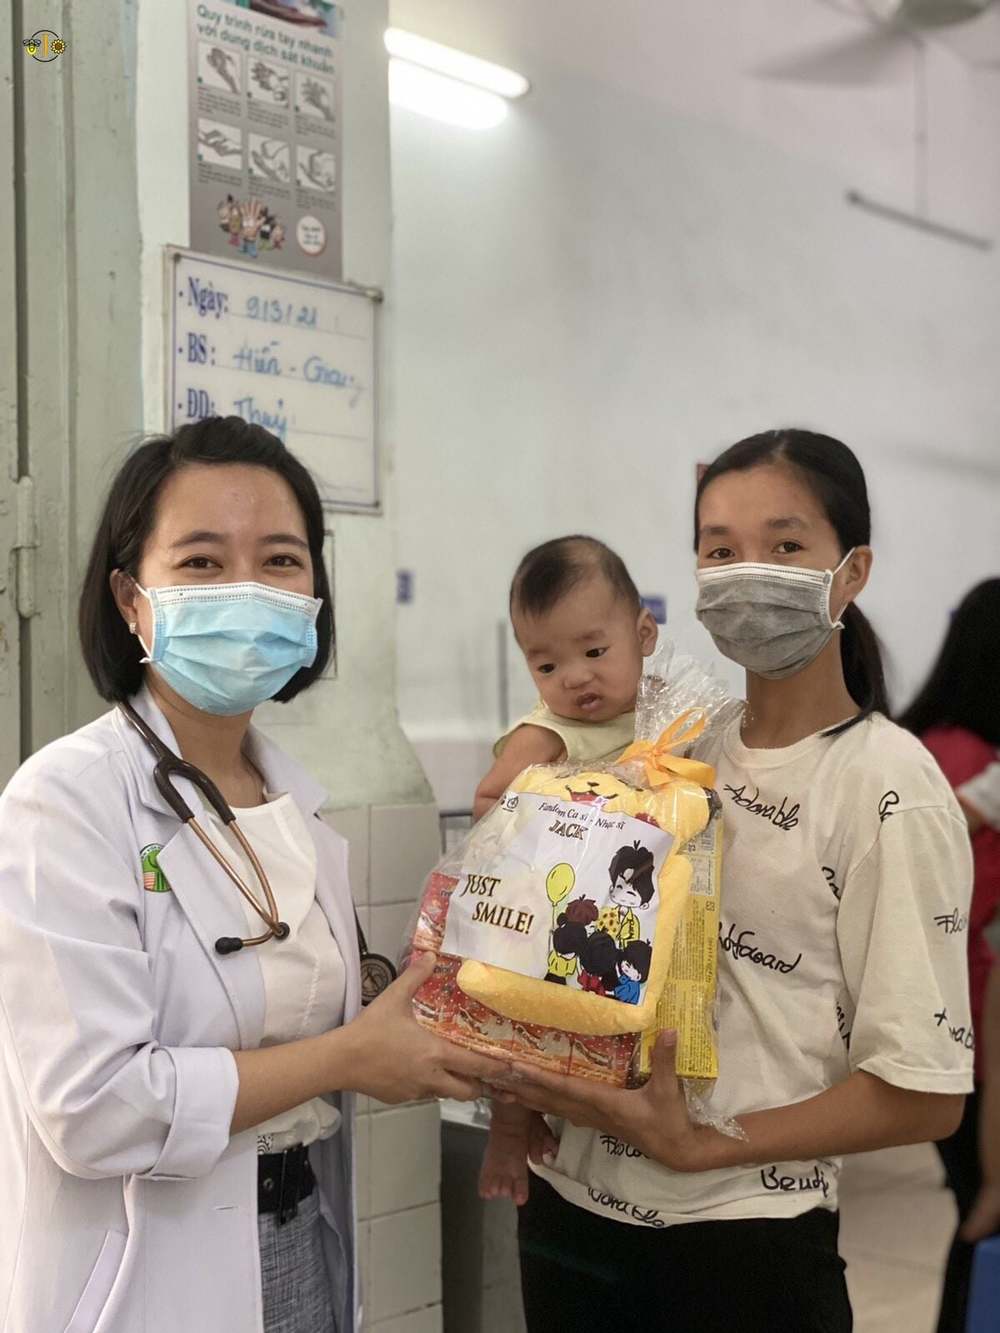  
Những món quà được các y bác sĩ gửi tận tay đến các bệnh nhi. (Ảnh: FBNV) - Tin sao Viet - Tin tuc sao Viet - Scandal sao Viet - Tin tuc cua Sao - Tin cua Sao